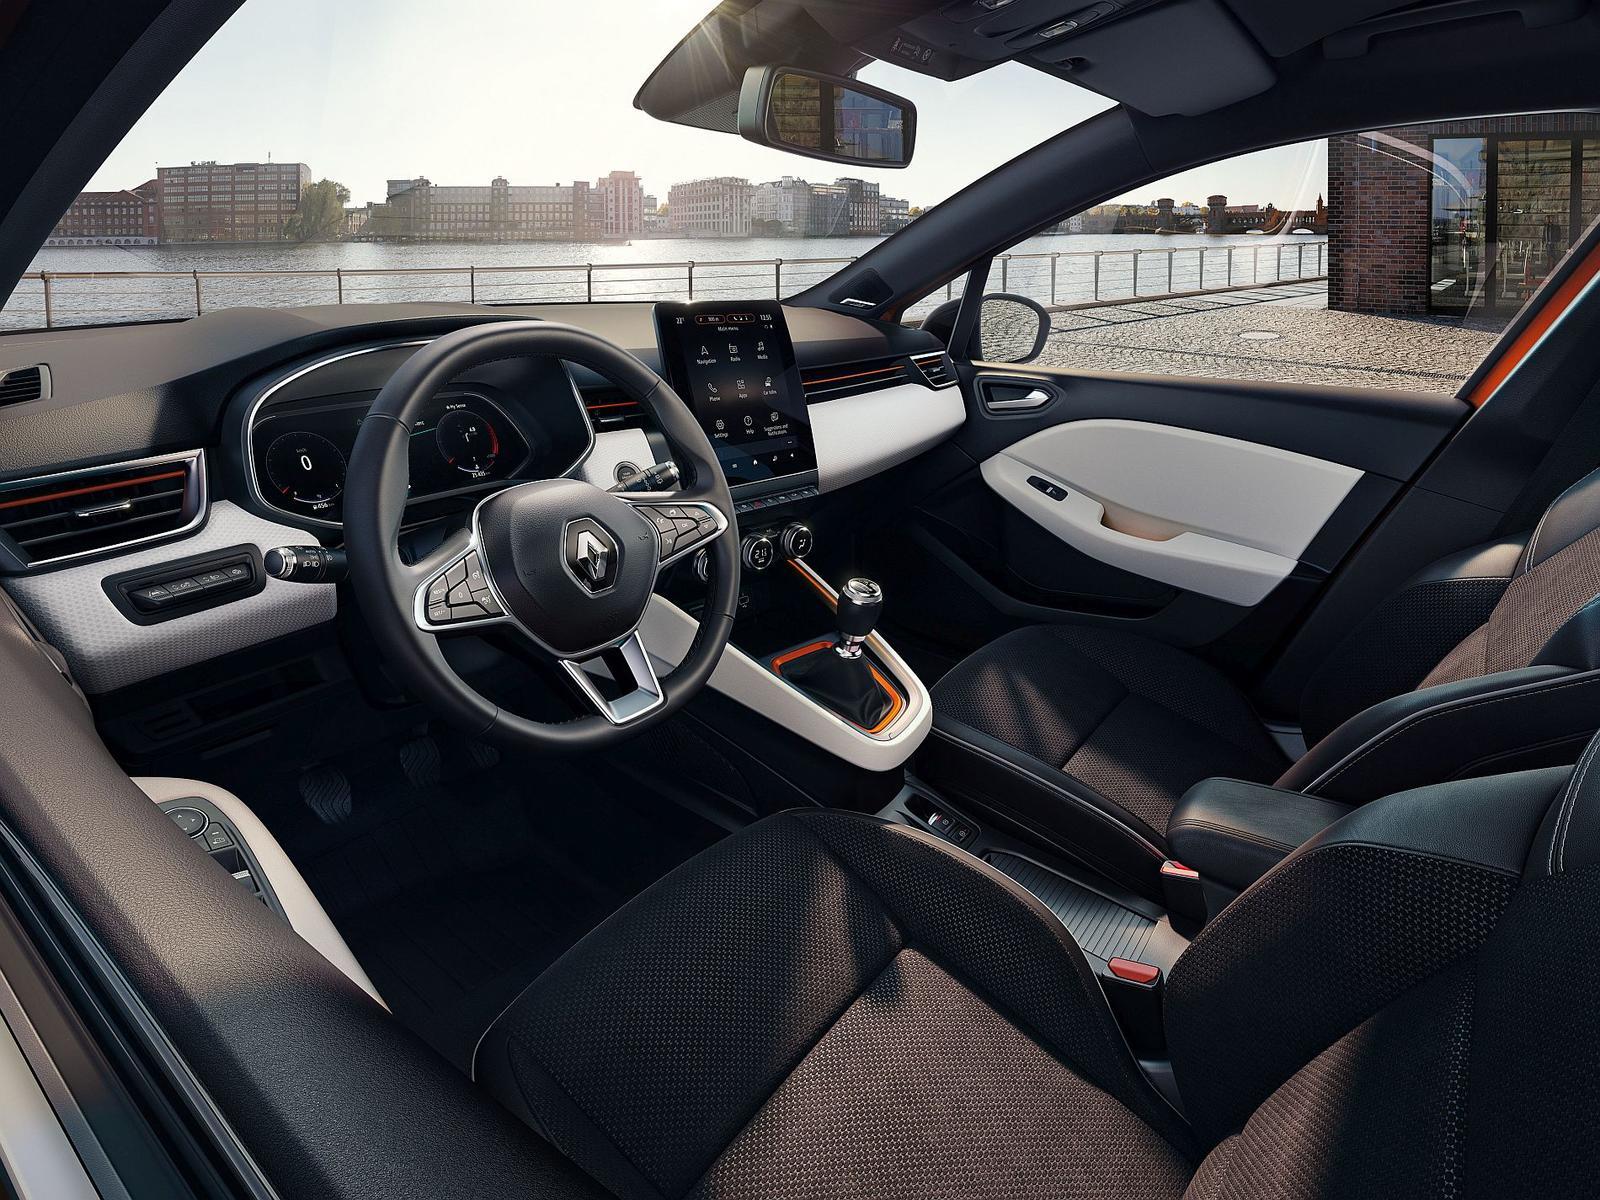 Renault Clio interior 2019 (1)